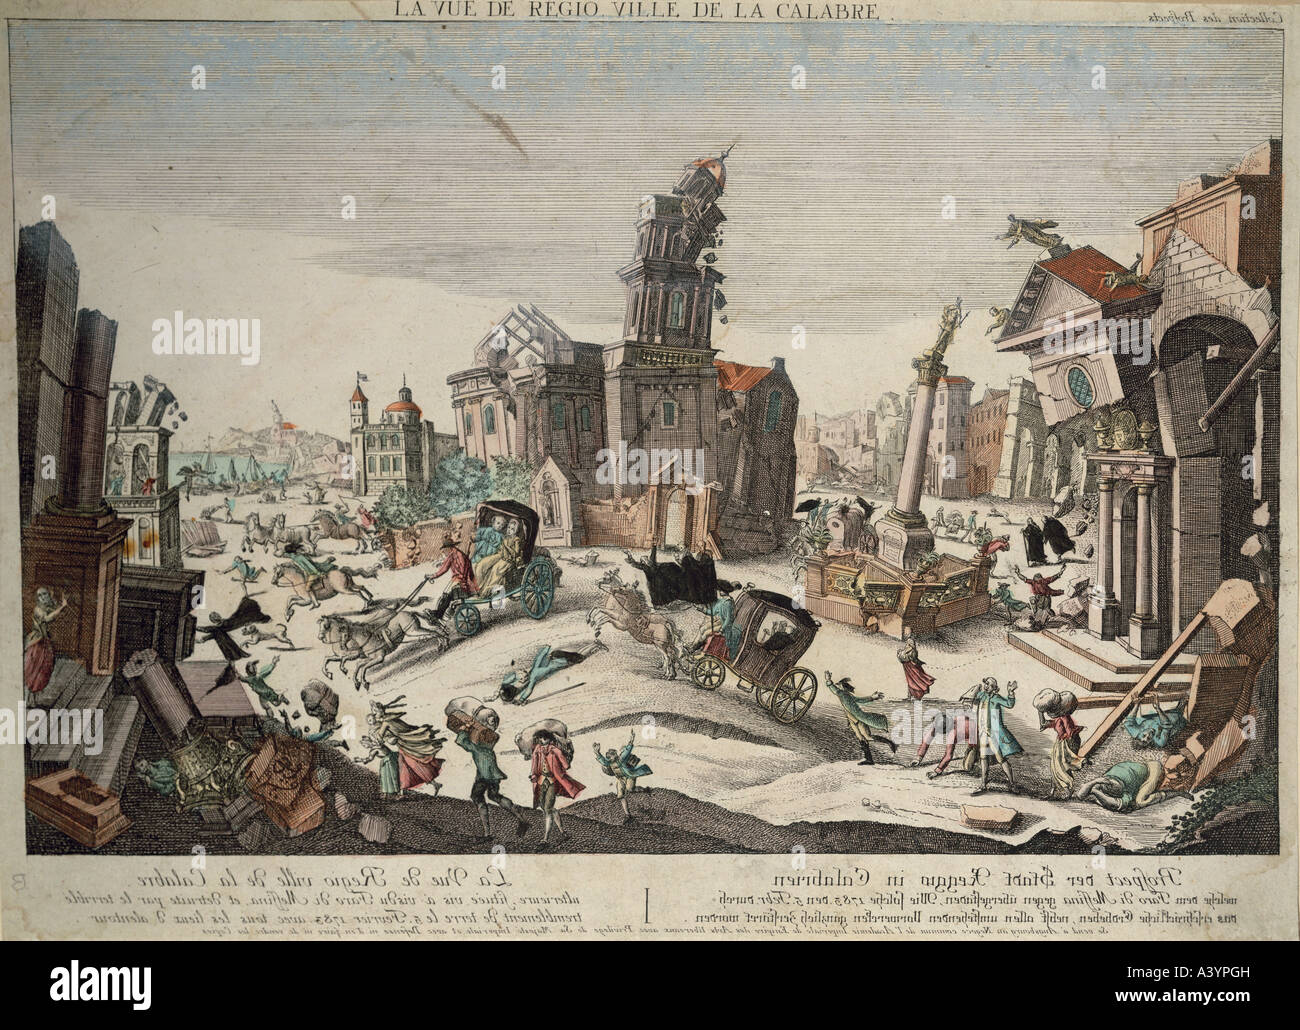 Naturkatastrophe/Katastrophe, Erdbeben, Reggio Calabria, 5.2.1783, Artist's Urheberrecht nicht geklärt zu werden. Stockfoto